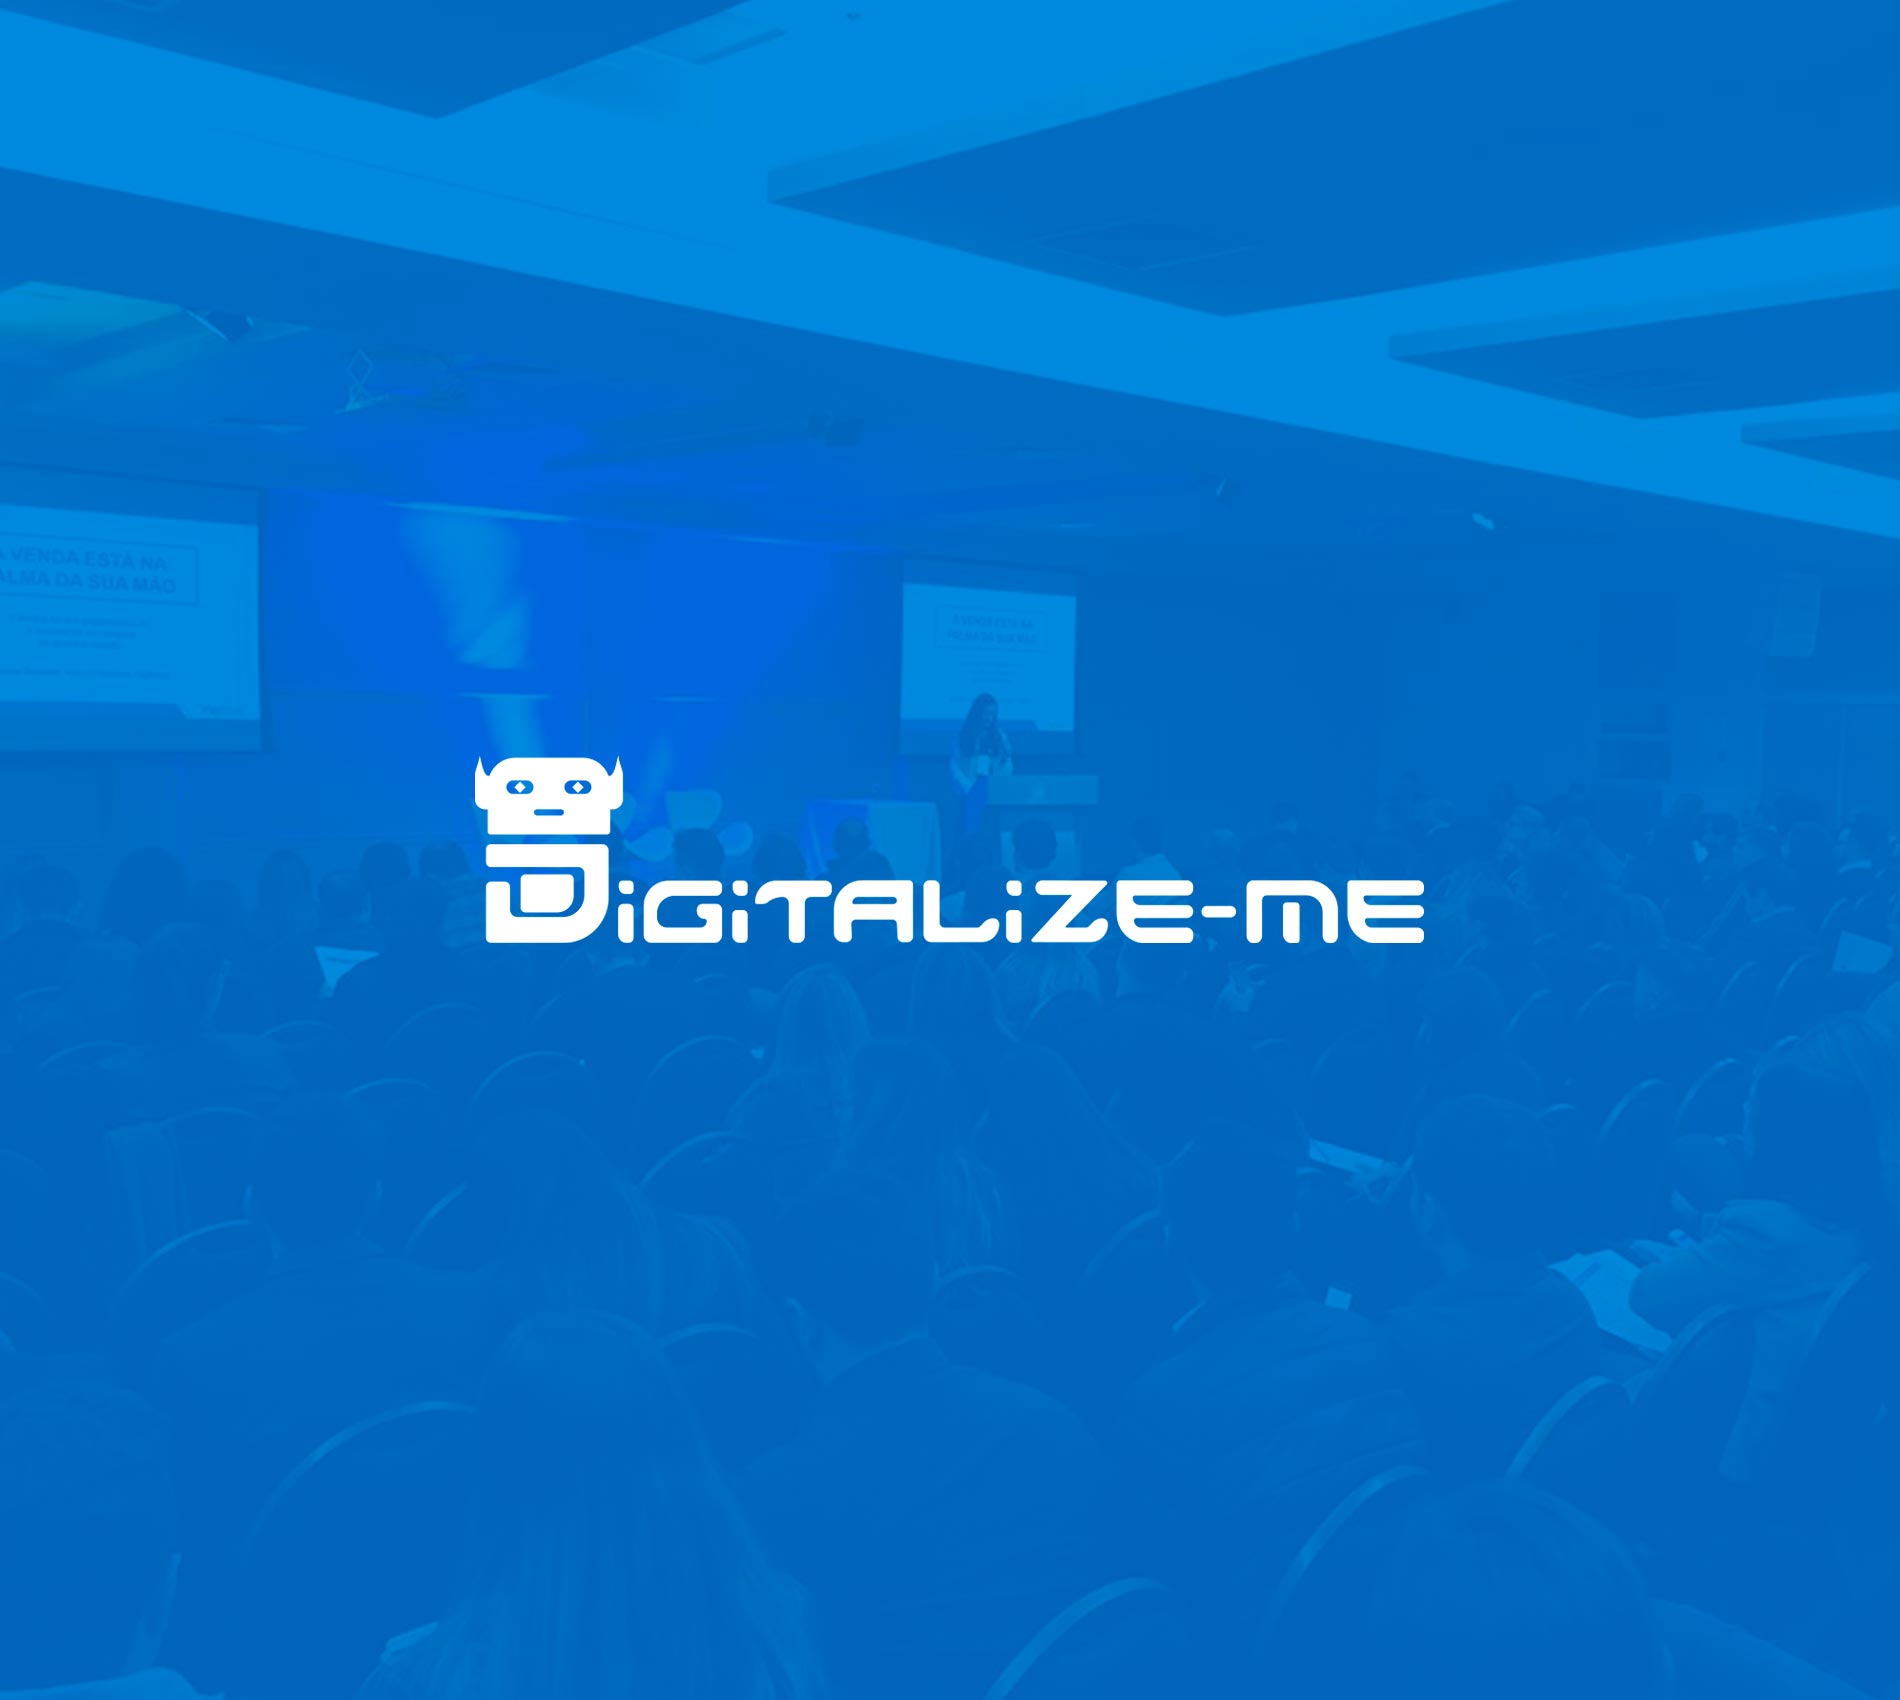 Digitalize-ME 2018, Porto Alegre